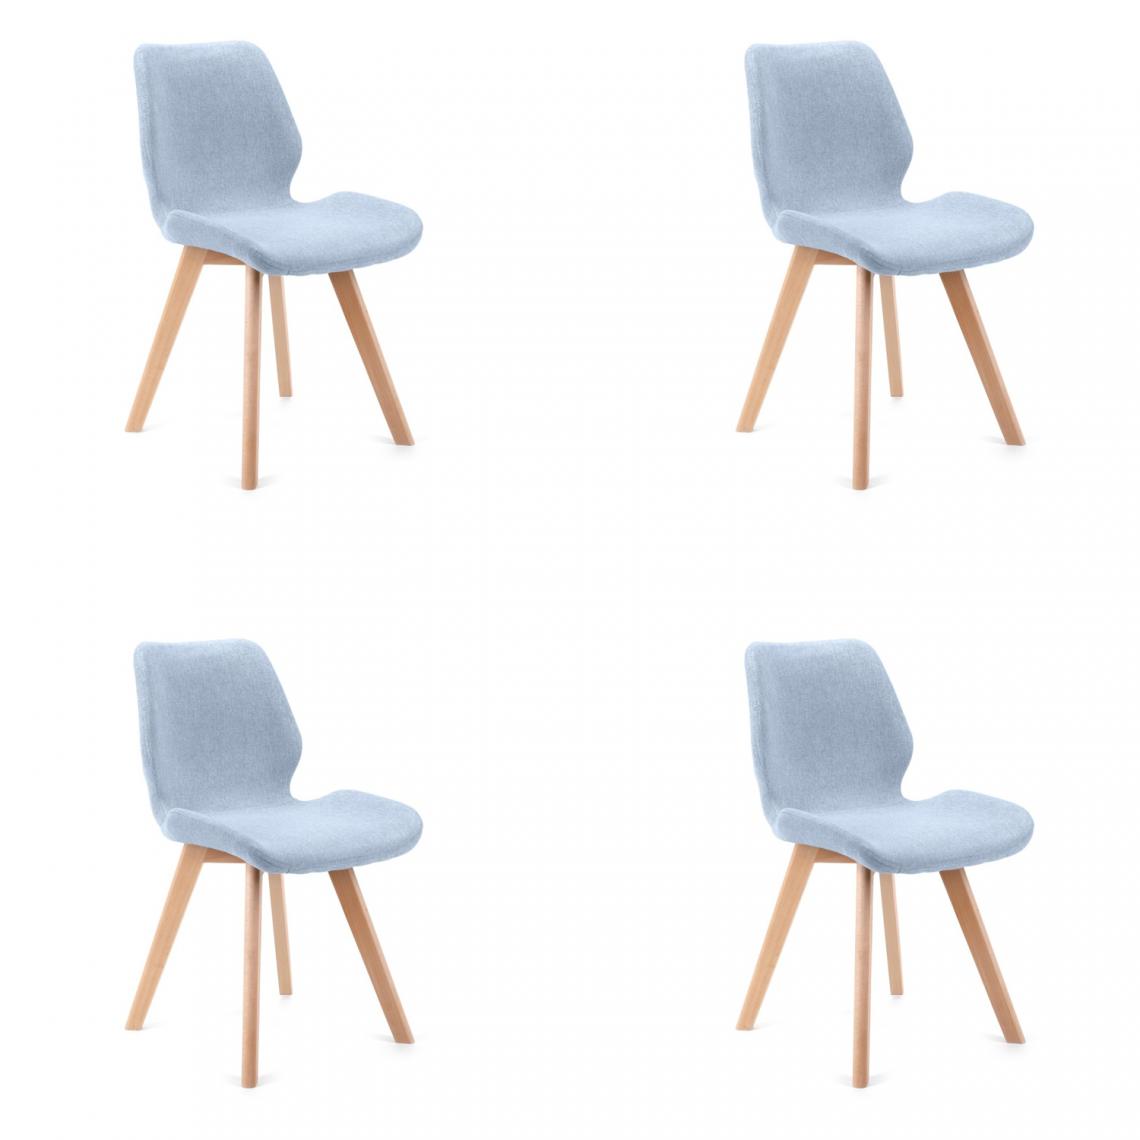 Hucoco - BROLI - Chaise rembourrée 4 pcs style moderne salon/salle à manger - 82.5x40x53 - Pieds en bois - Bleu - Chaises